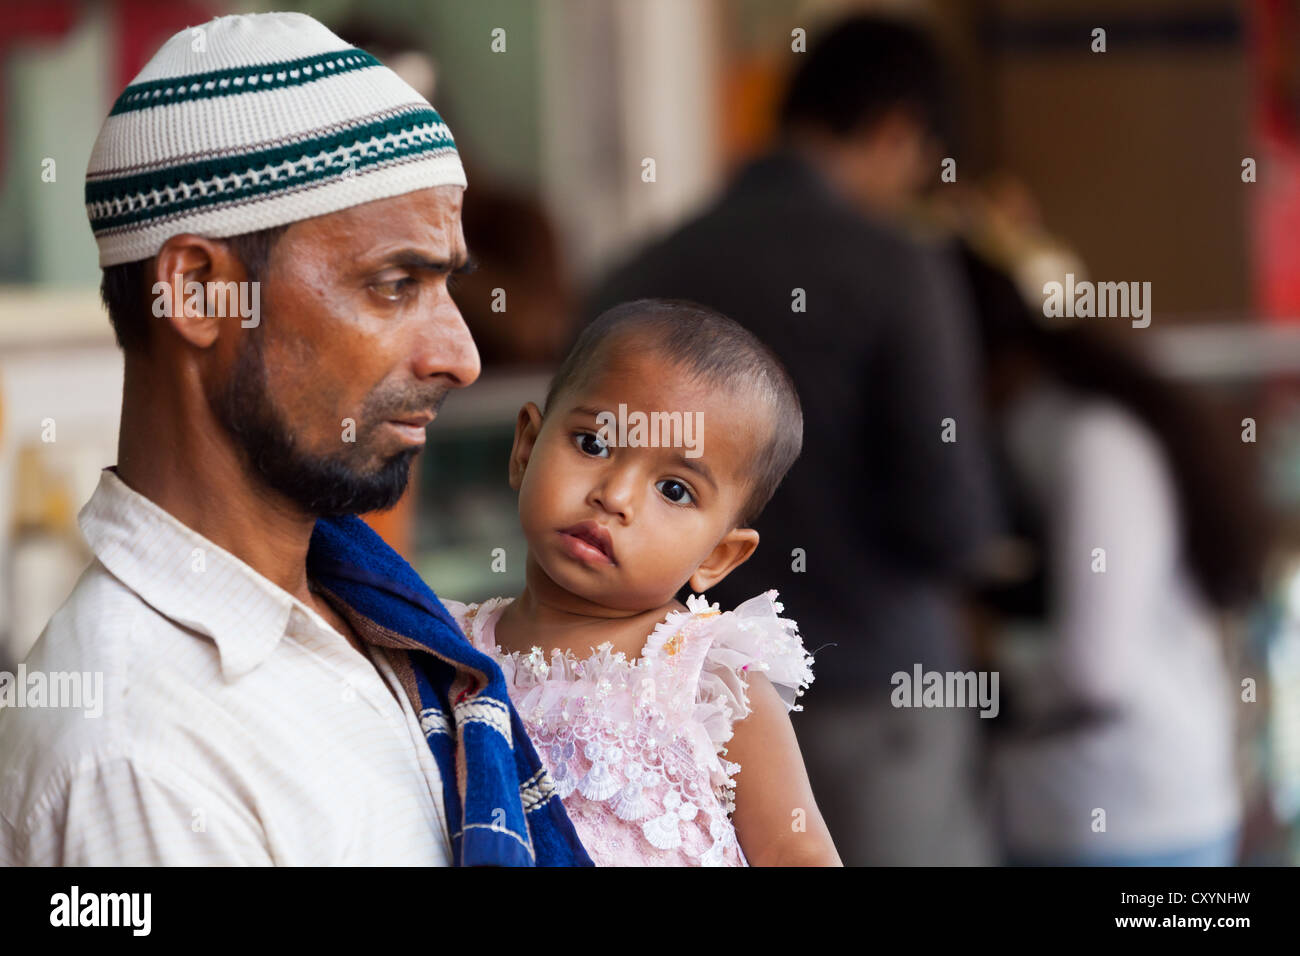 L'homme avec le bébé sur son bras à Kolkata, Inde Banque D'Images